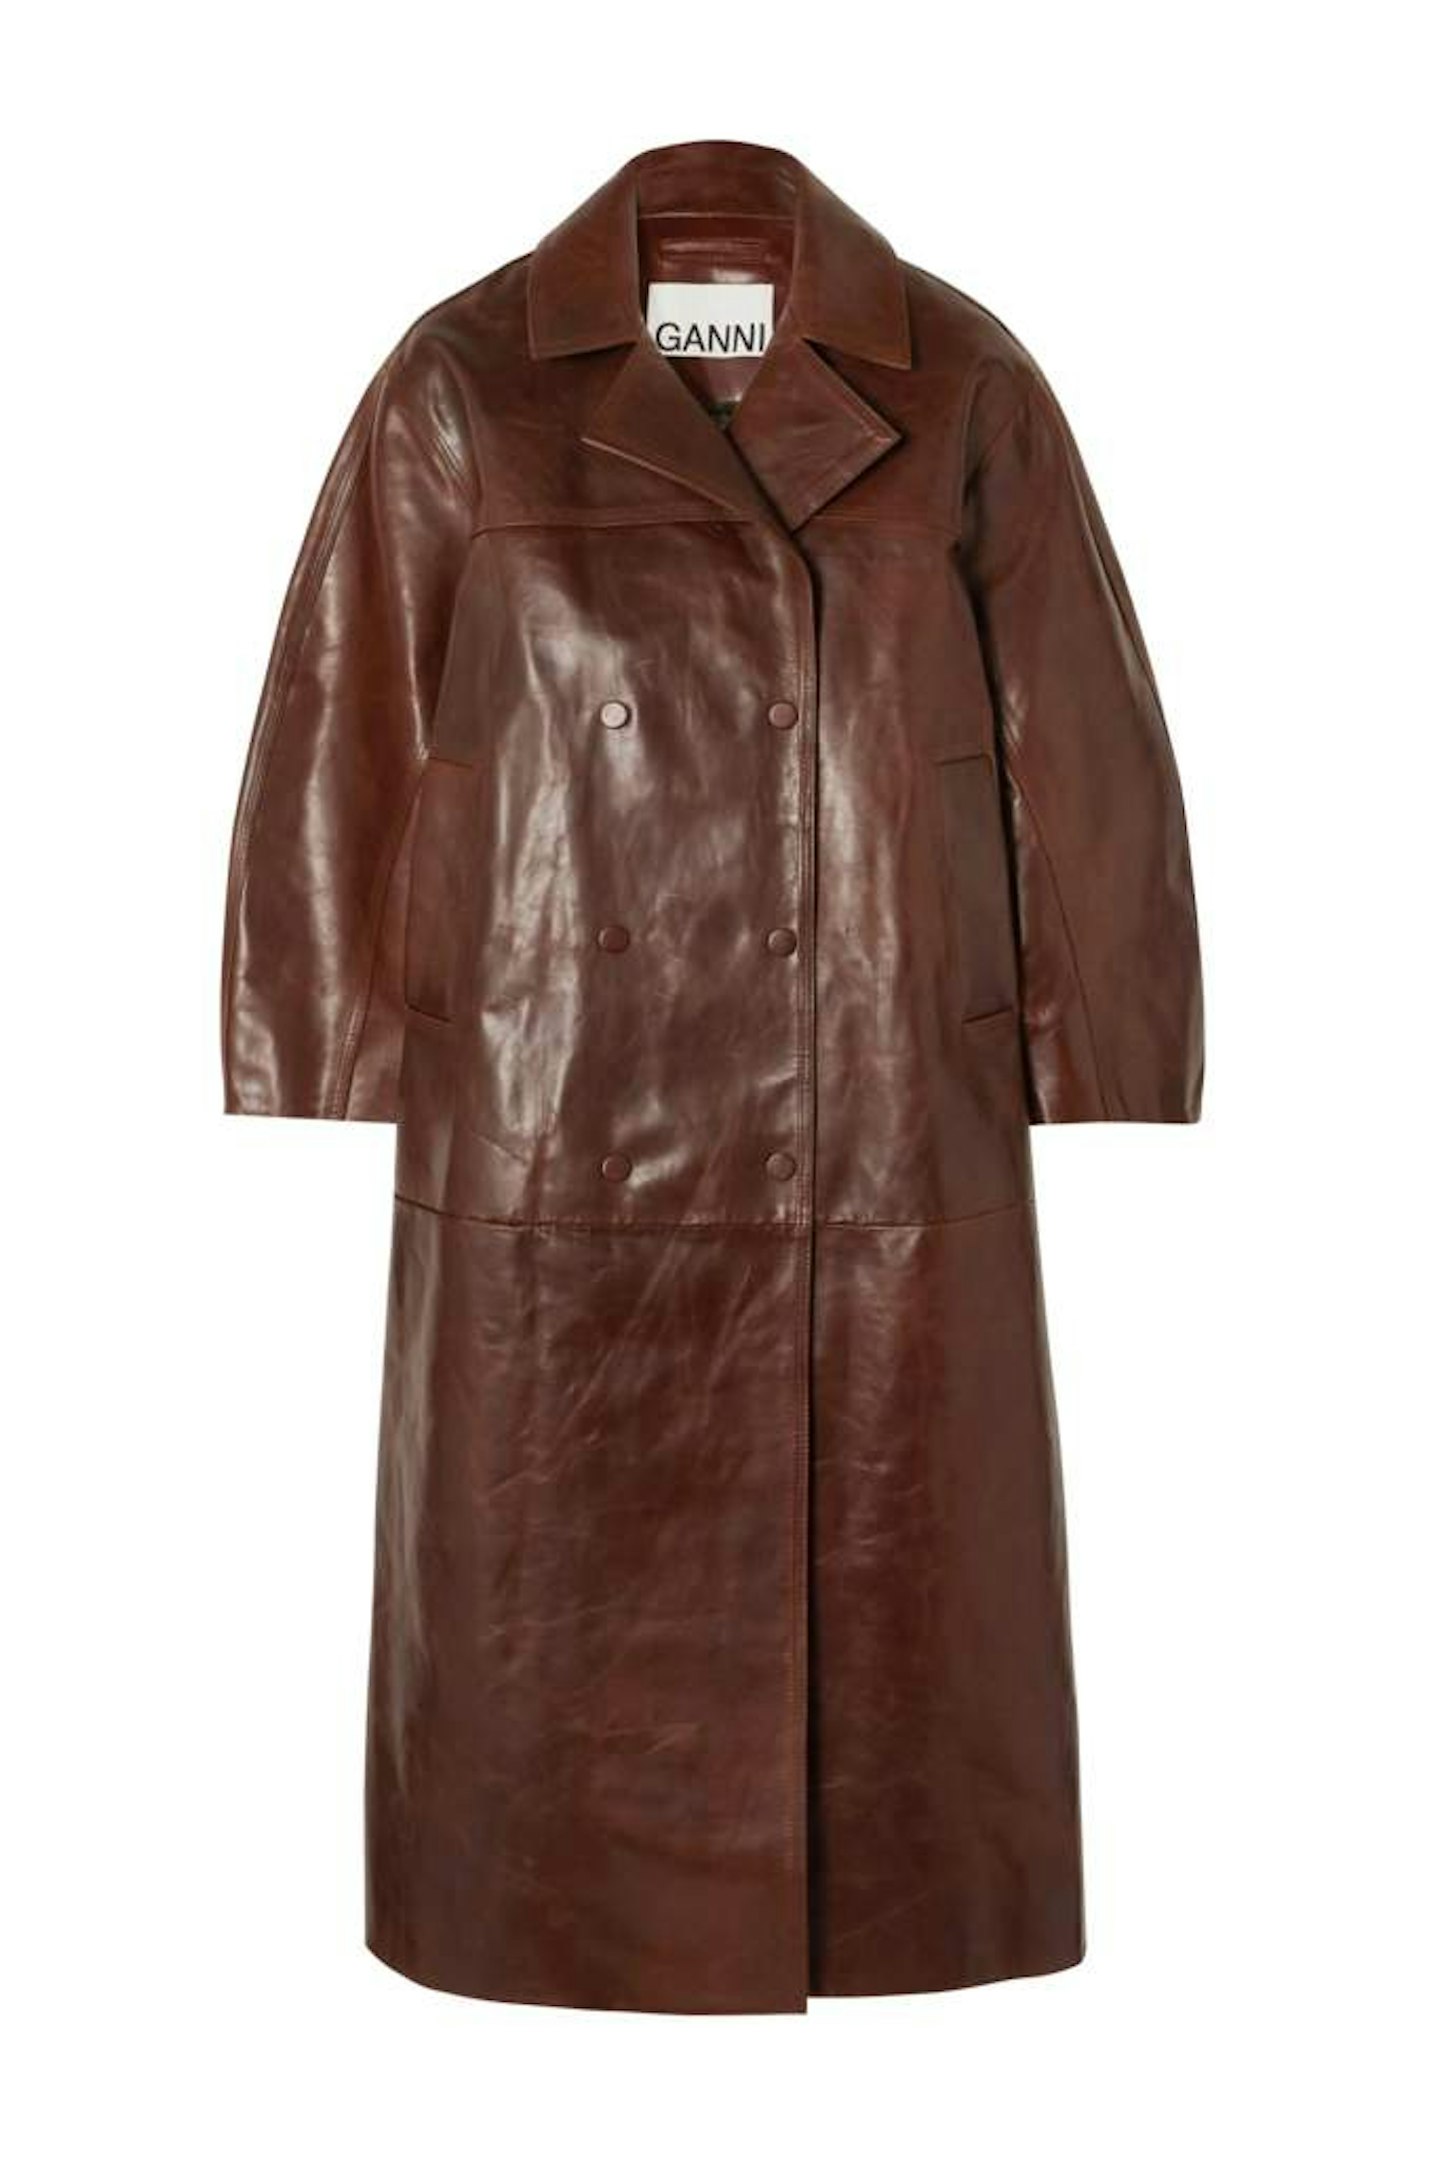 Ganni, Oversized leather coat, £1,090